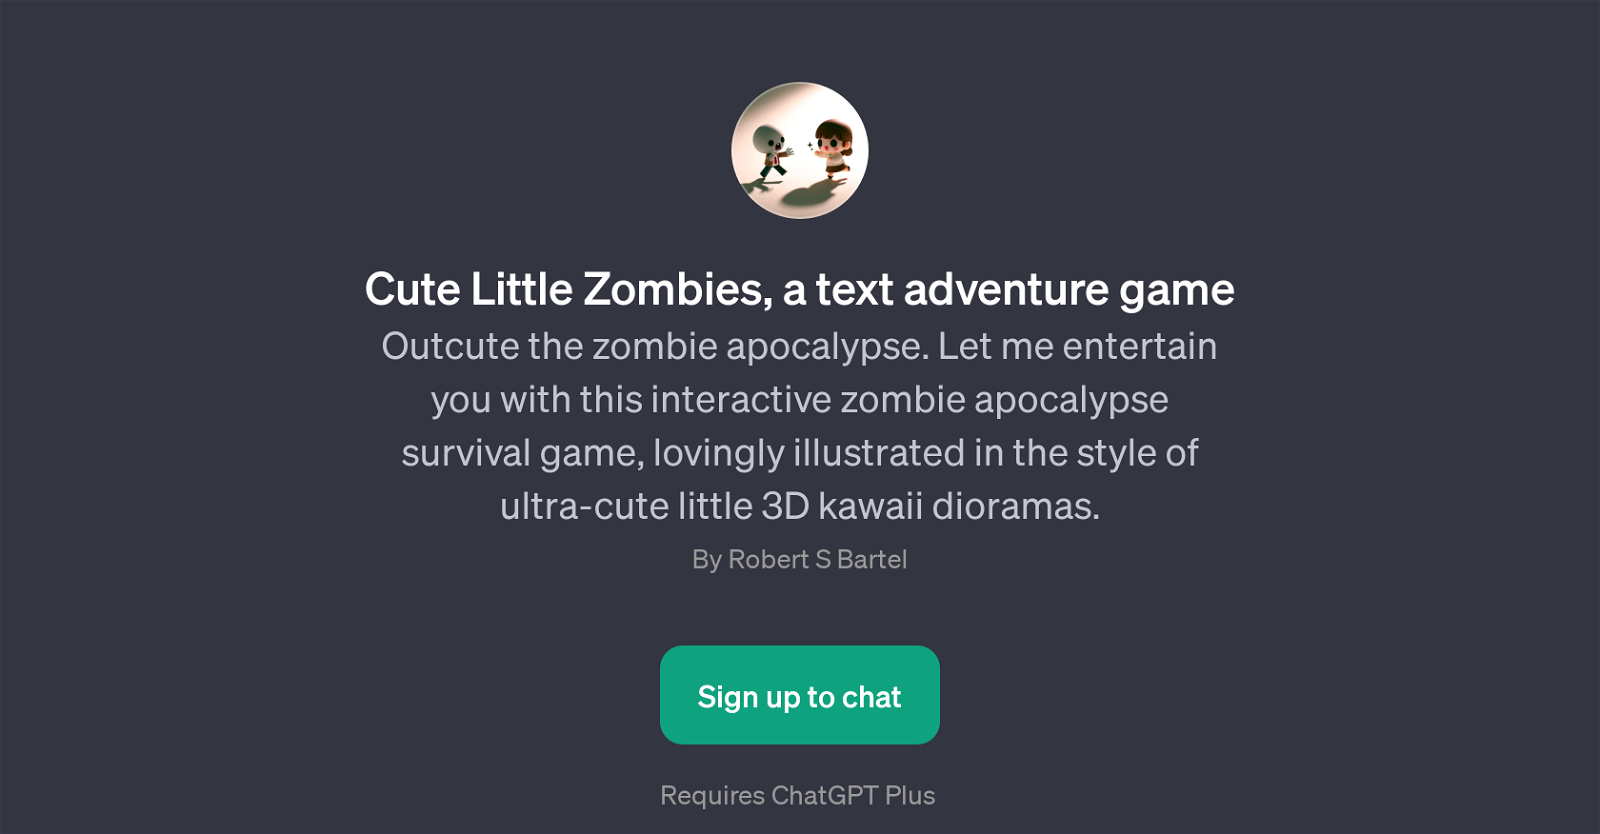 Cute Little Zombies website